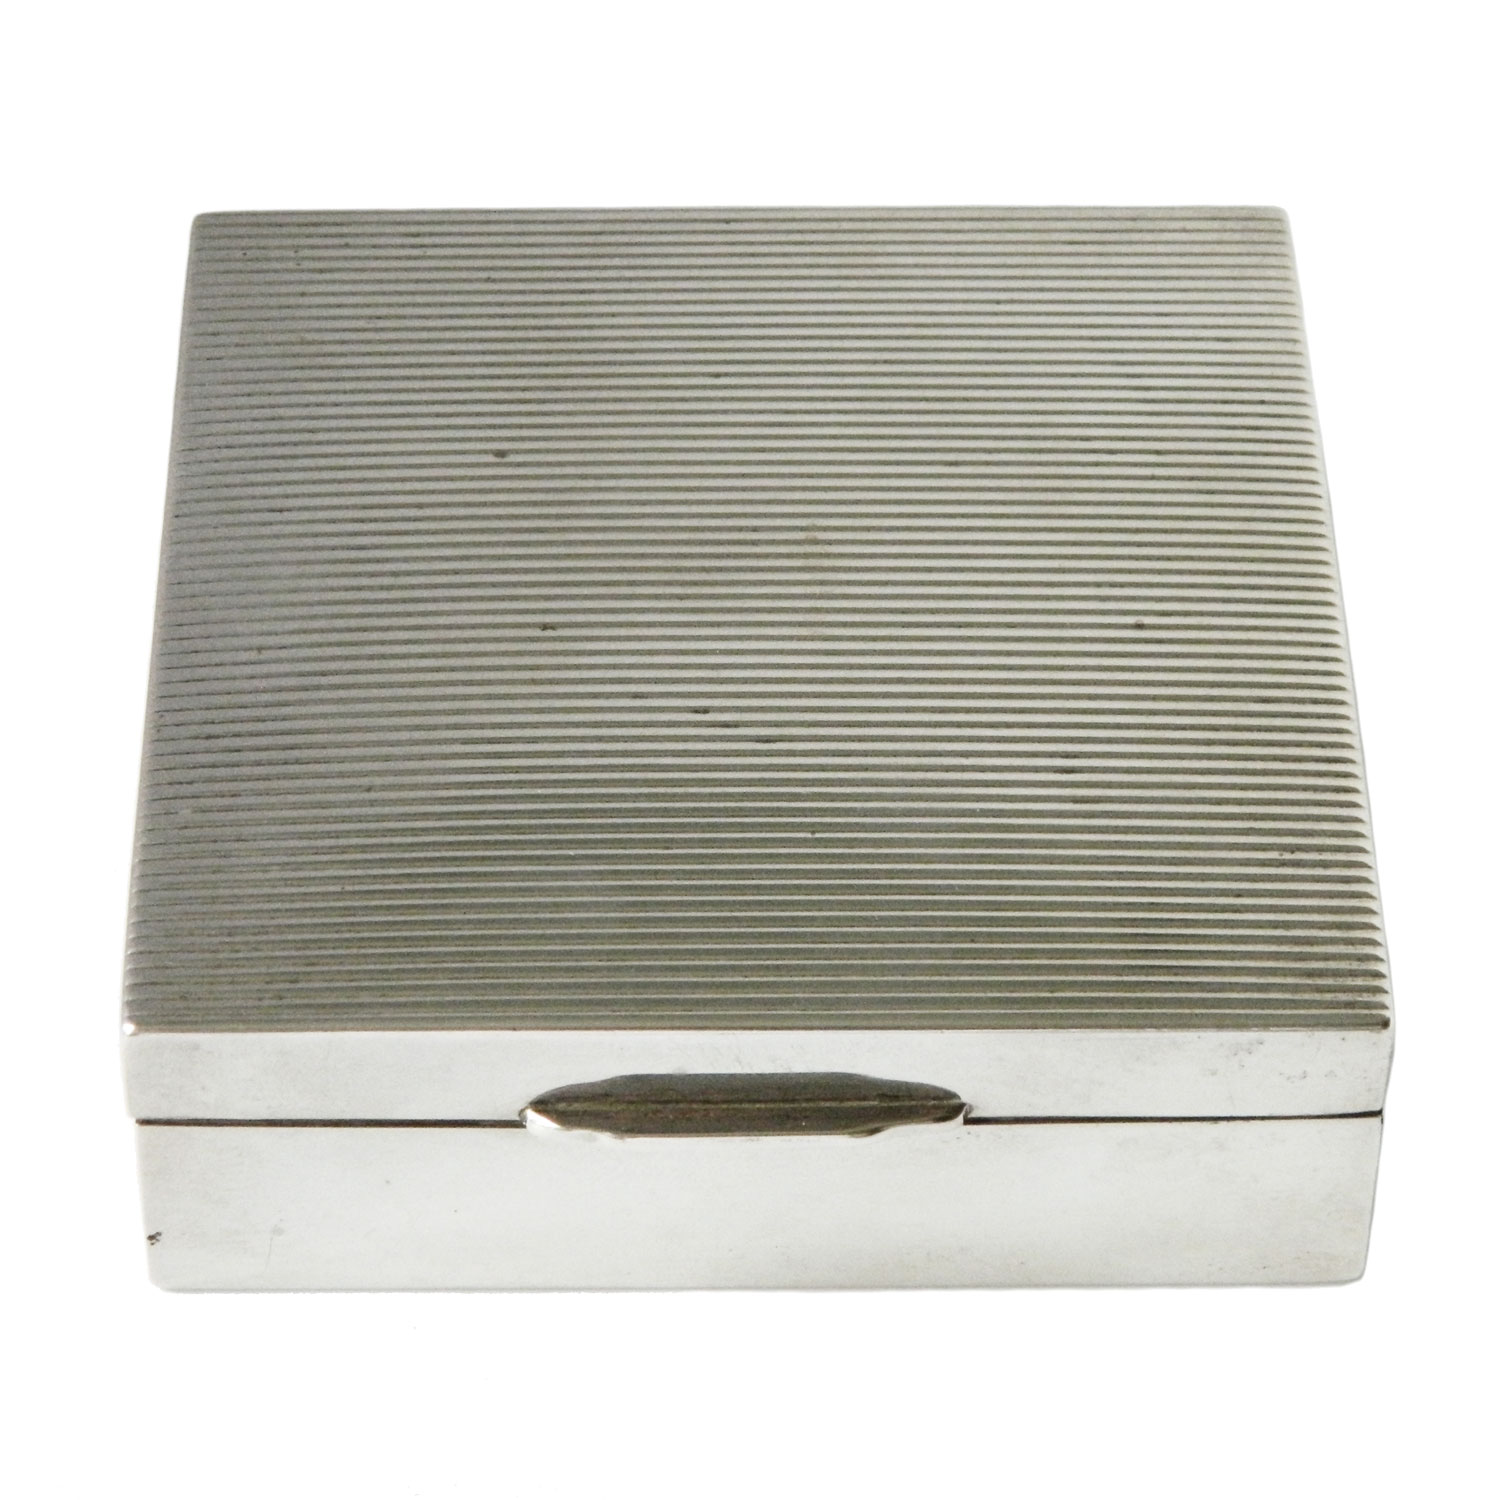 Vintage cigarette box